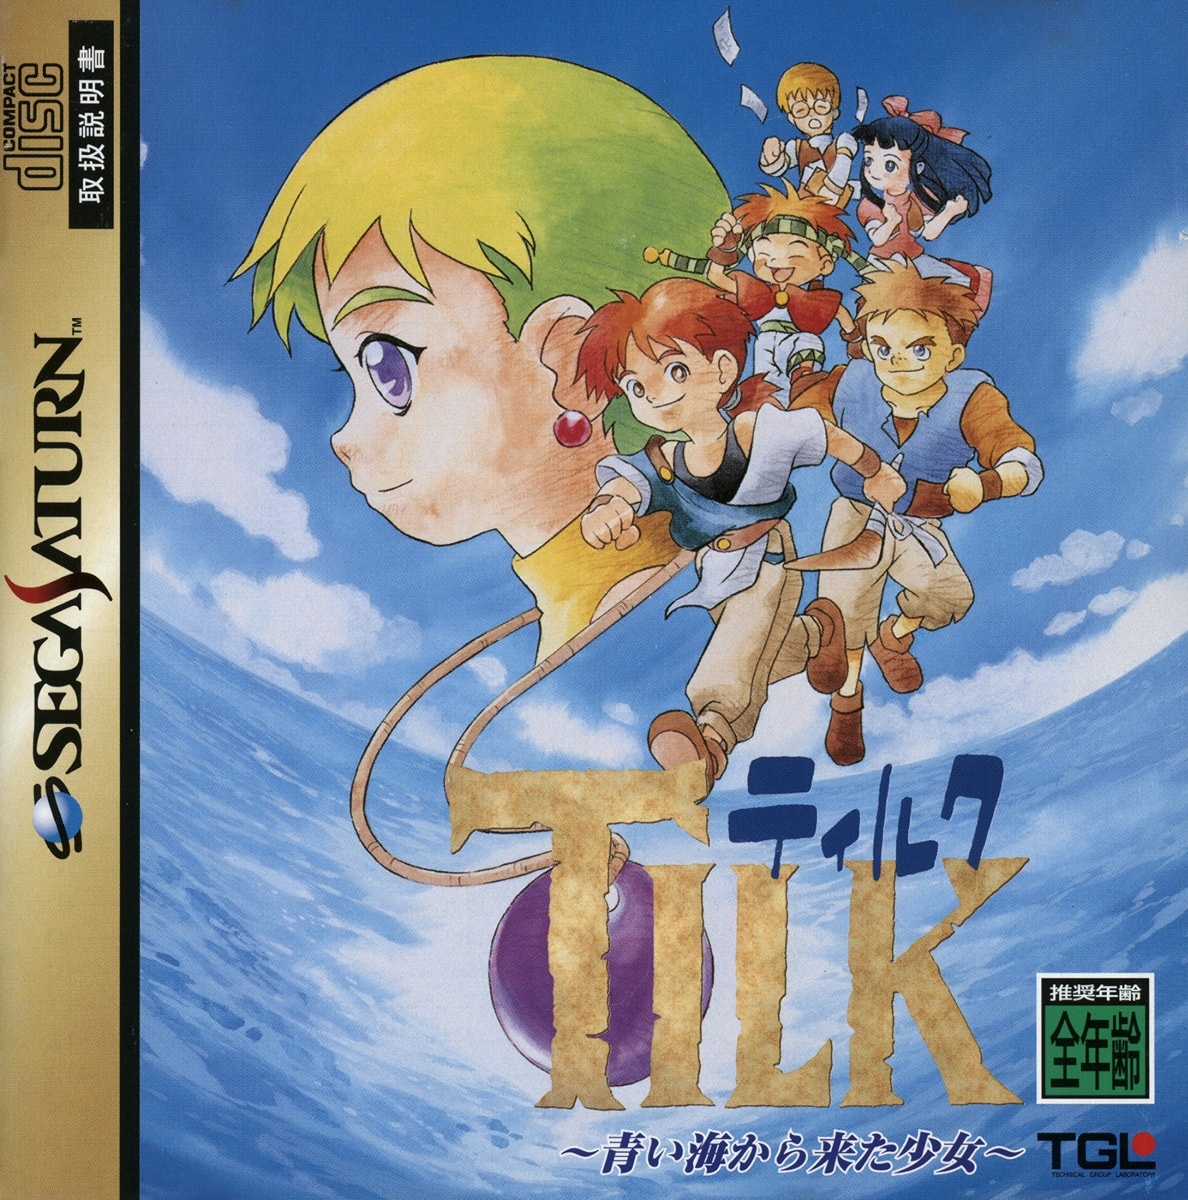 Capa do jogo Tilk: Aoi Umi kara Kita Shoujo